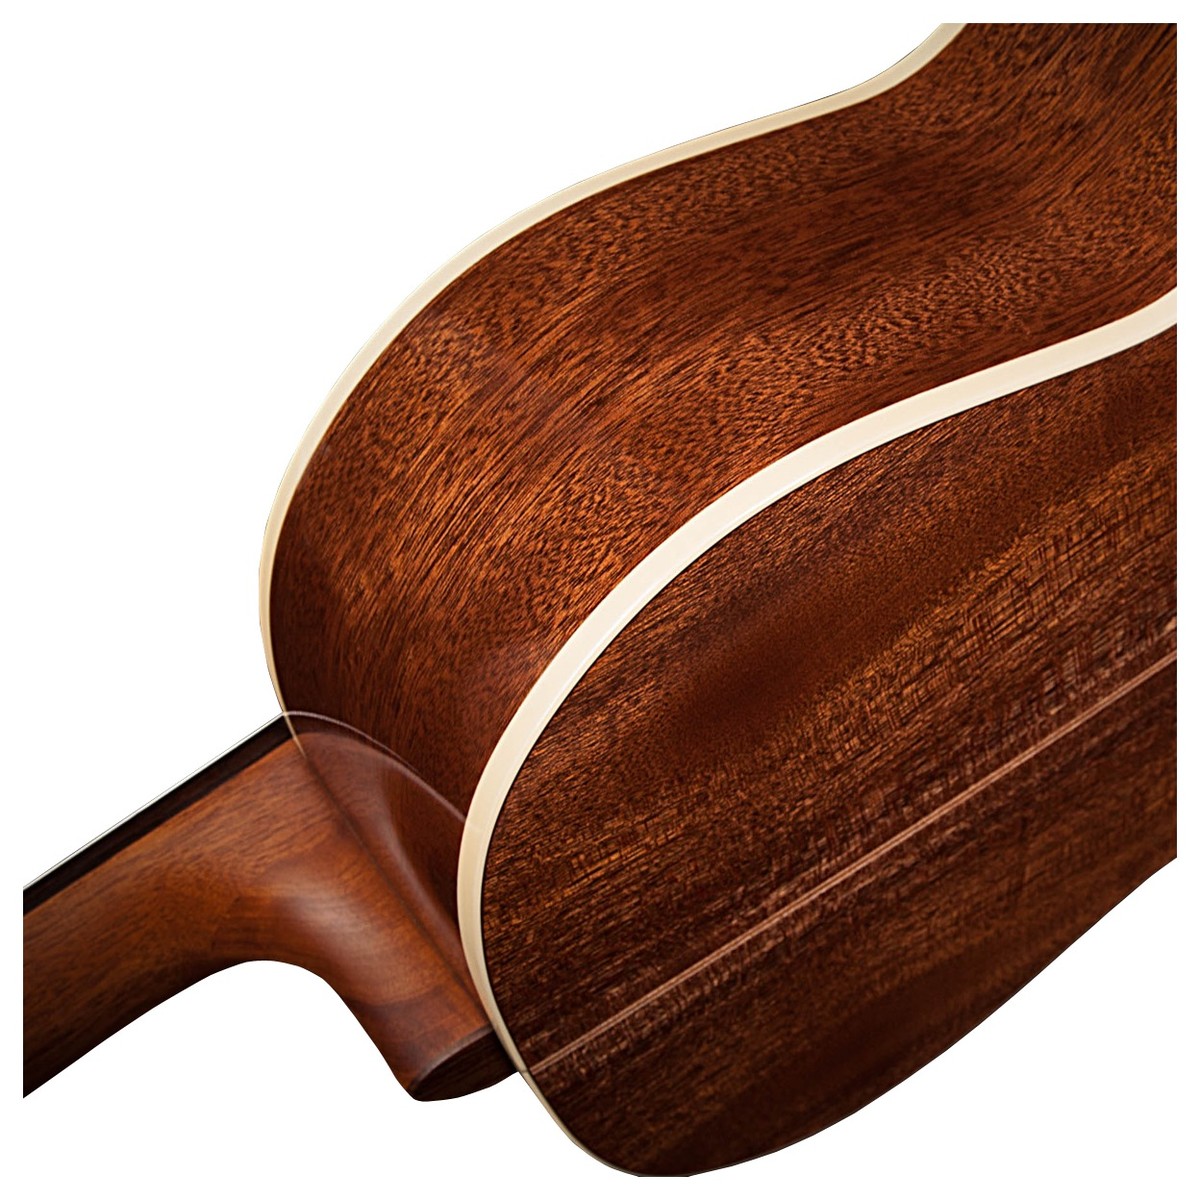 La Patrie Concert Cedre Acajou Rw - Natural - Classical guitar 4/4 size - Variation 2